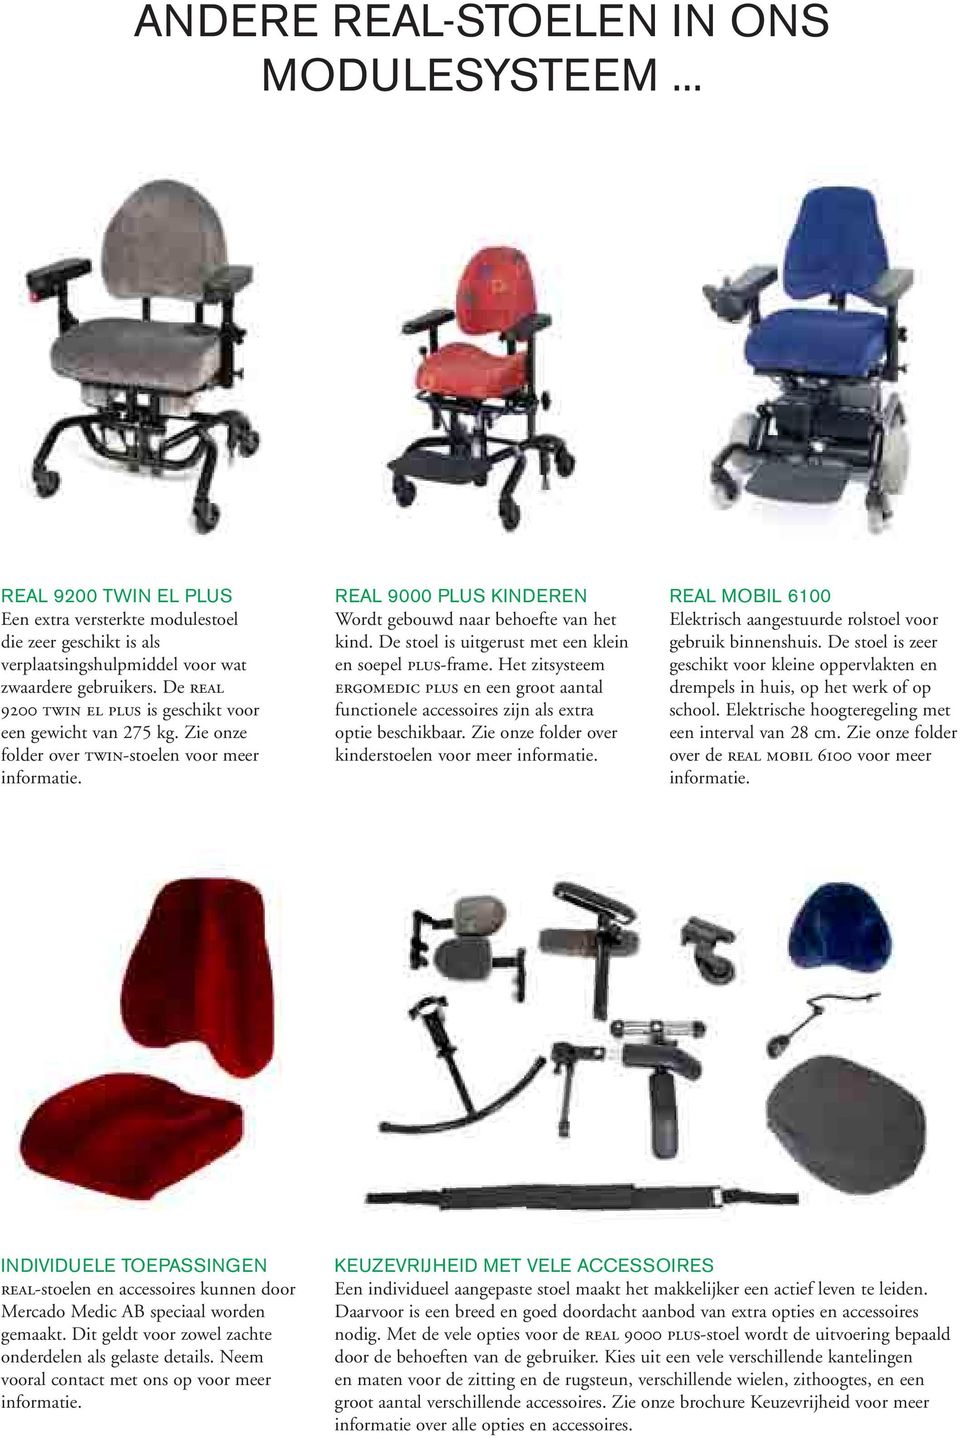 De stoel is uitgerust met een klein en soepel plus-frame. Het zitsysteem ergomedic plus en een groot aantal functionele accessoires zijn als extra optie beschikbaar.